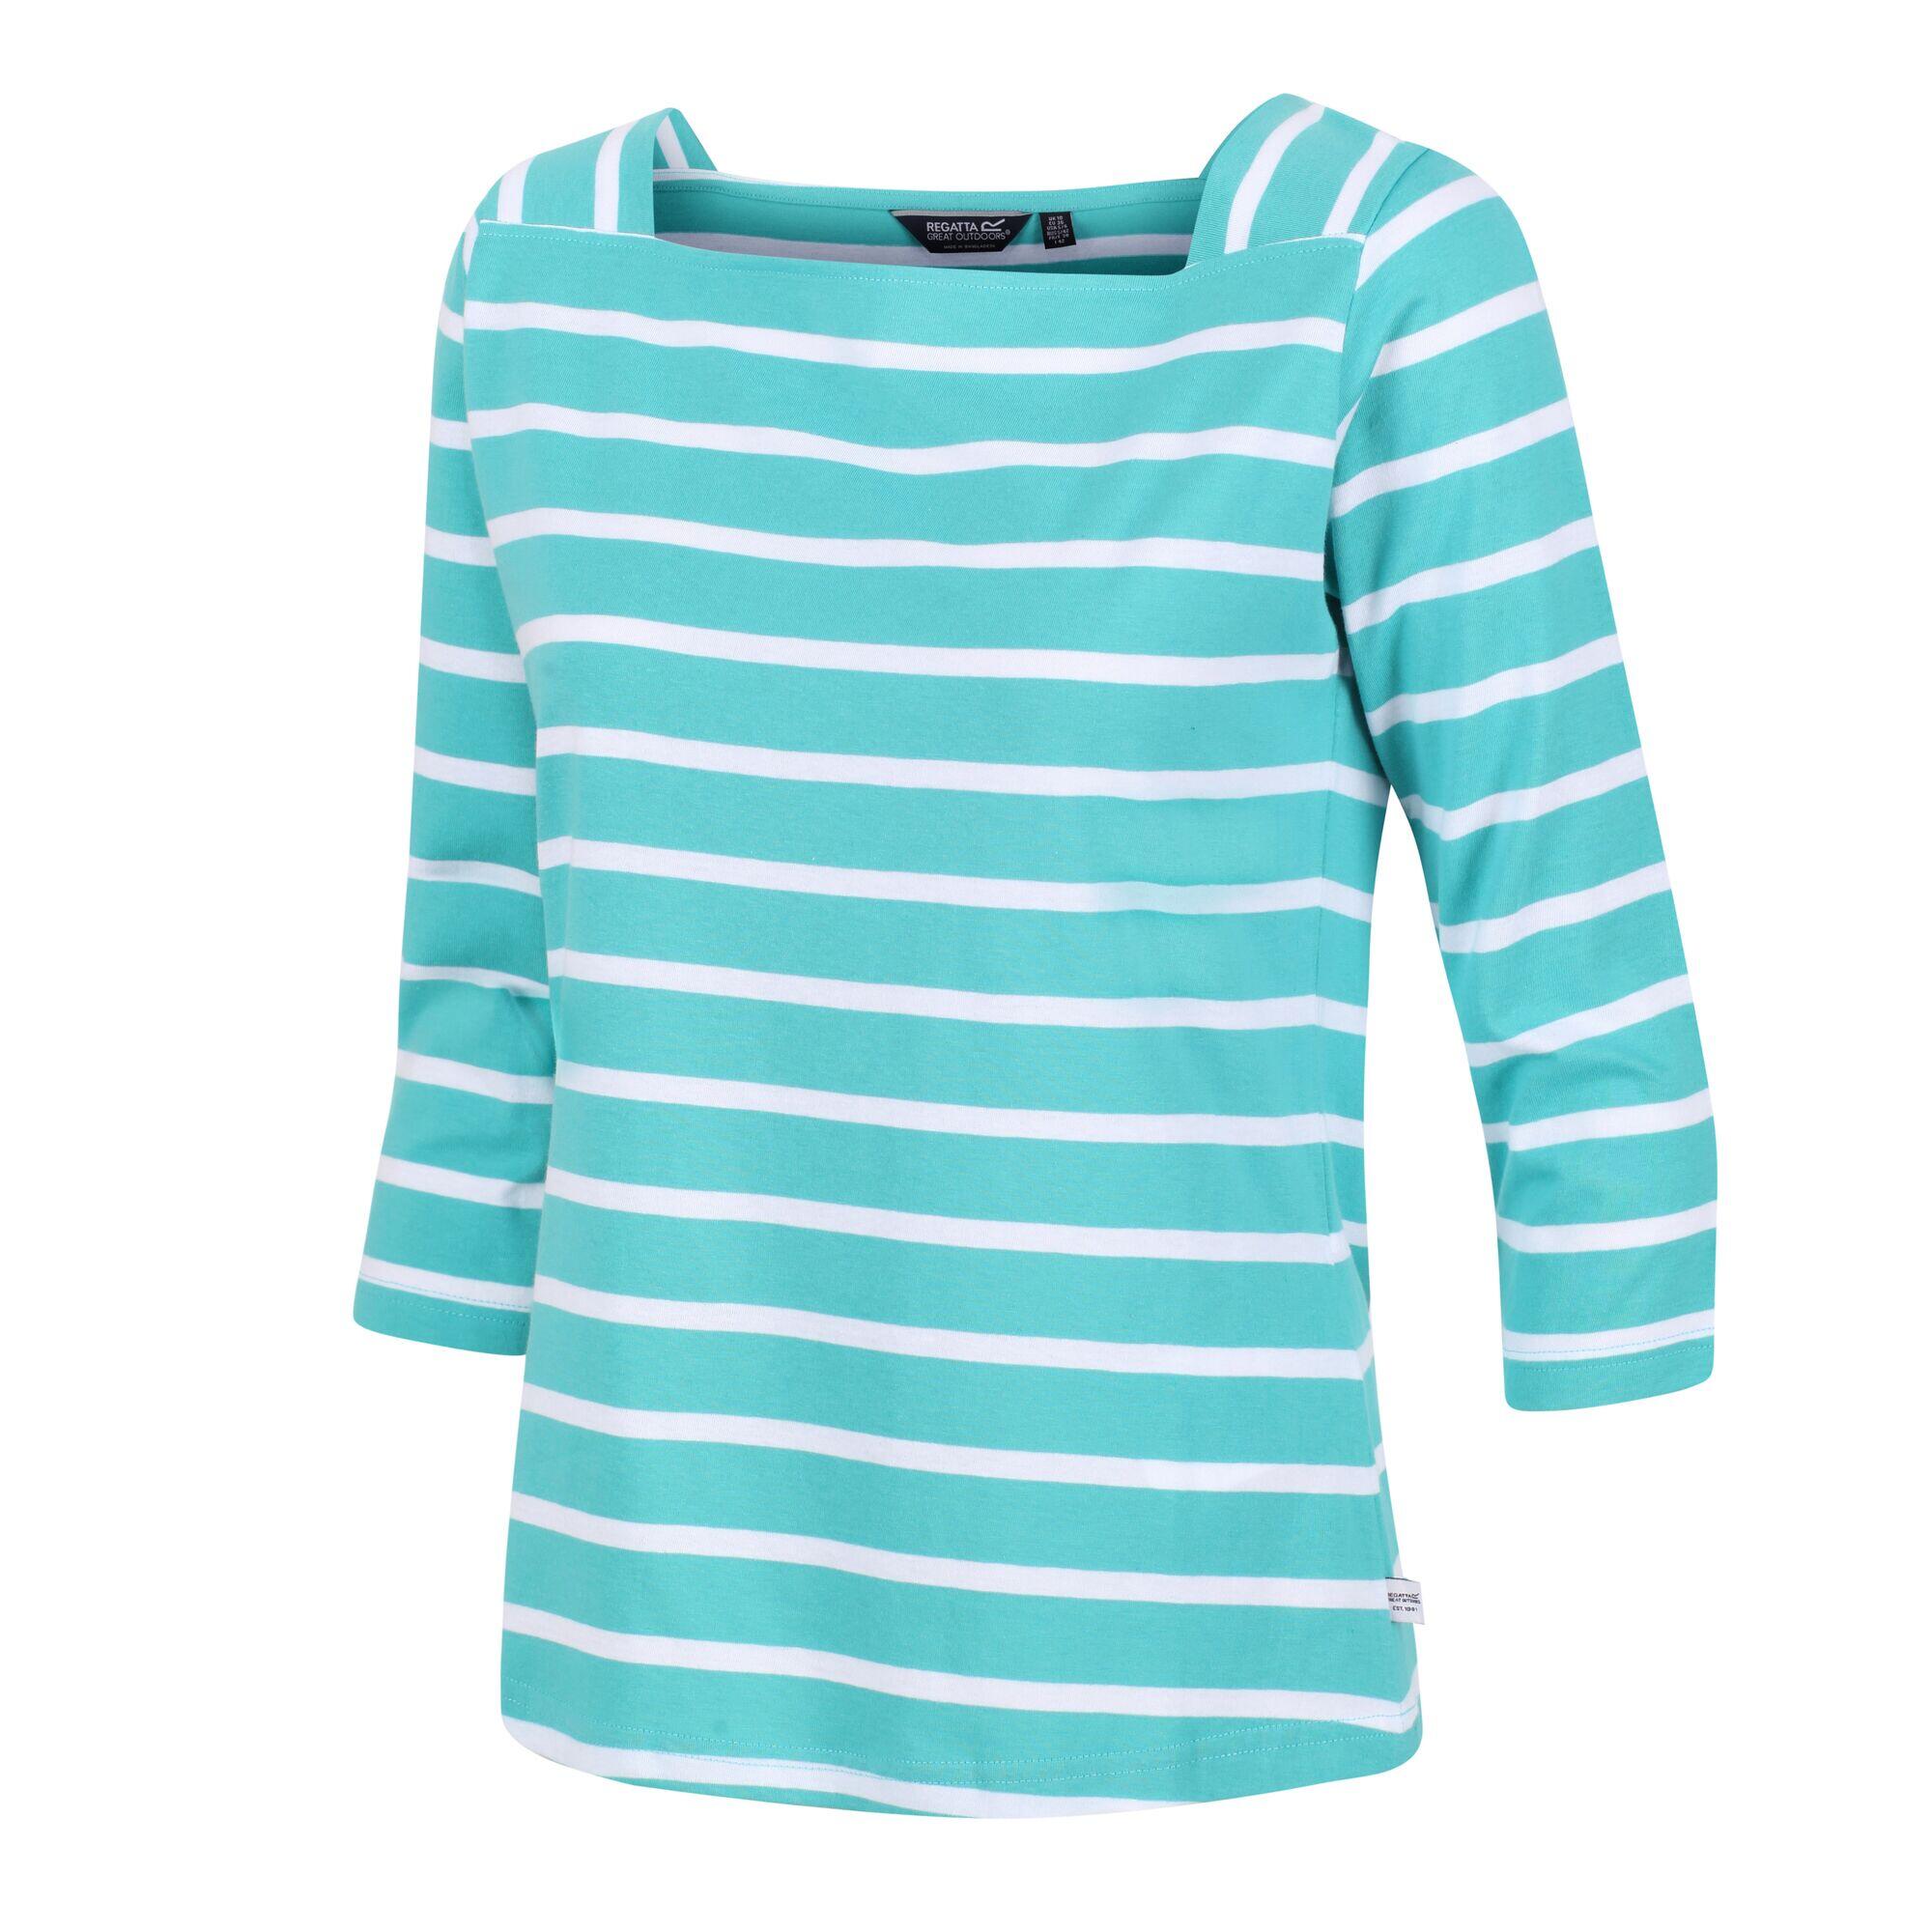 REGATTA Womens/Ladies Polexia Stripe TShirt (Turquoise/White)